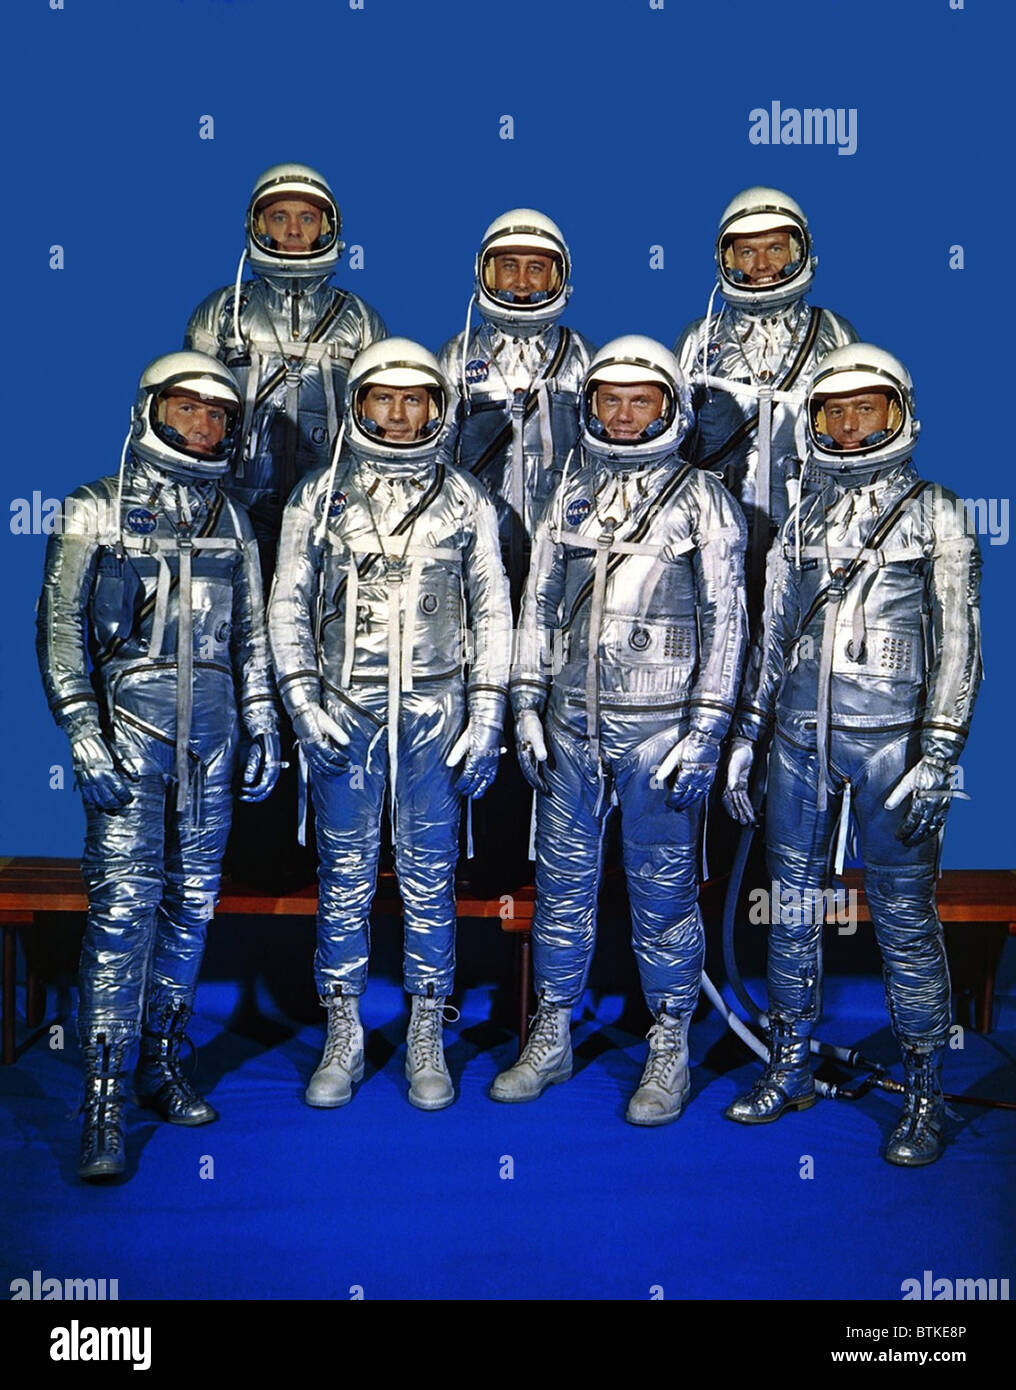 Projekt Mercury-Astronauten in ihren Raumanzügen. Vordere Reihe, von links nach rechts, Walter H. Schirra Jr., Donald K. Slayton, John H. Glenn Jr. und Scott Carpenter; Zeile, Alan B. Shepard Jr., Gus Grissom und L. Gordon Cooper zurück. 1959. Stockfoto